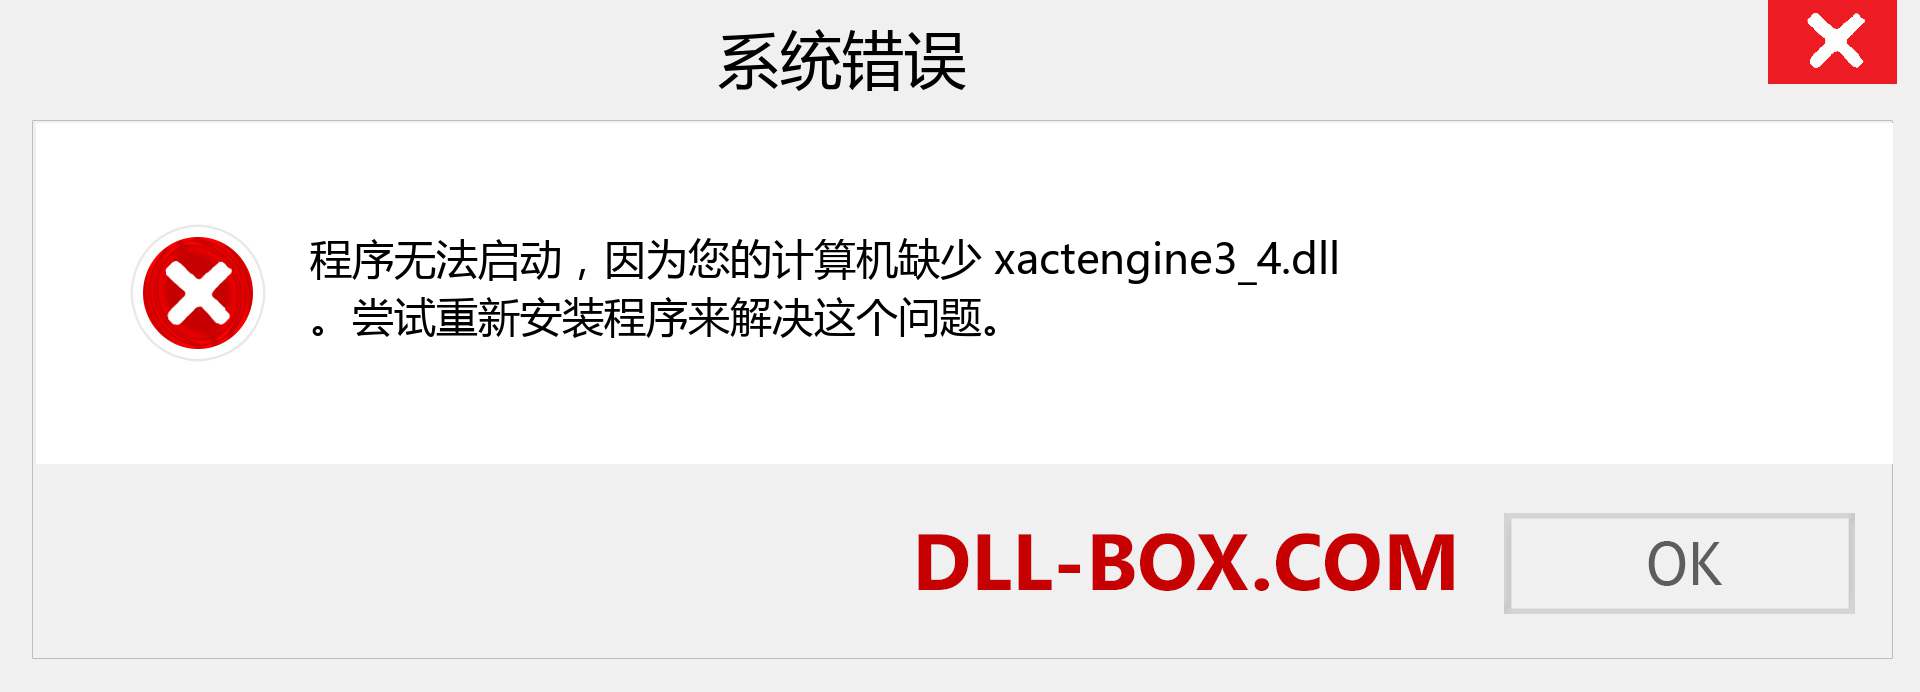 xactengine3_4.dll 文件丢失？。 适用于 Windows 7、8、10 的下载 - 修复 Windows、照片、图像上的 xactengine3_4 dll 丢失错误